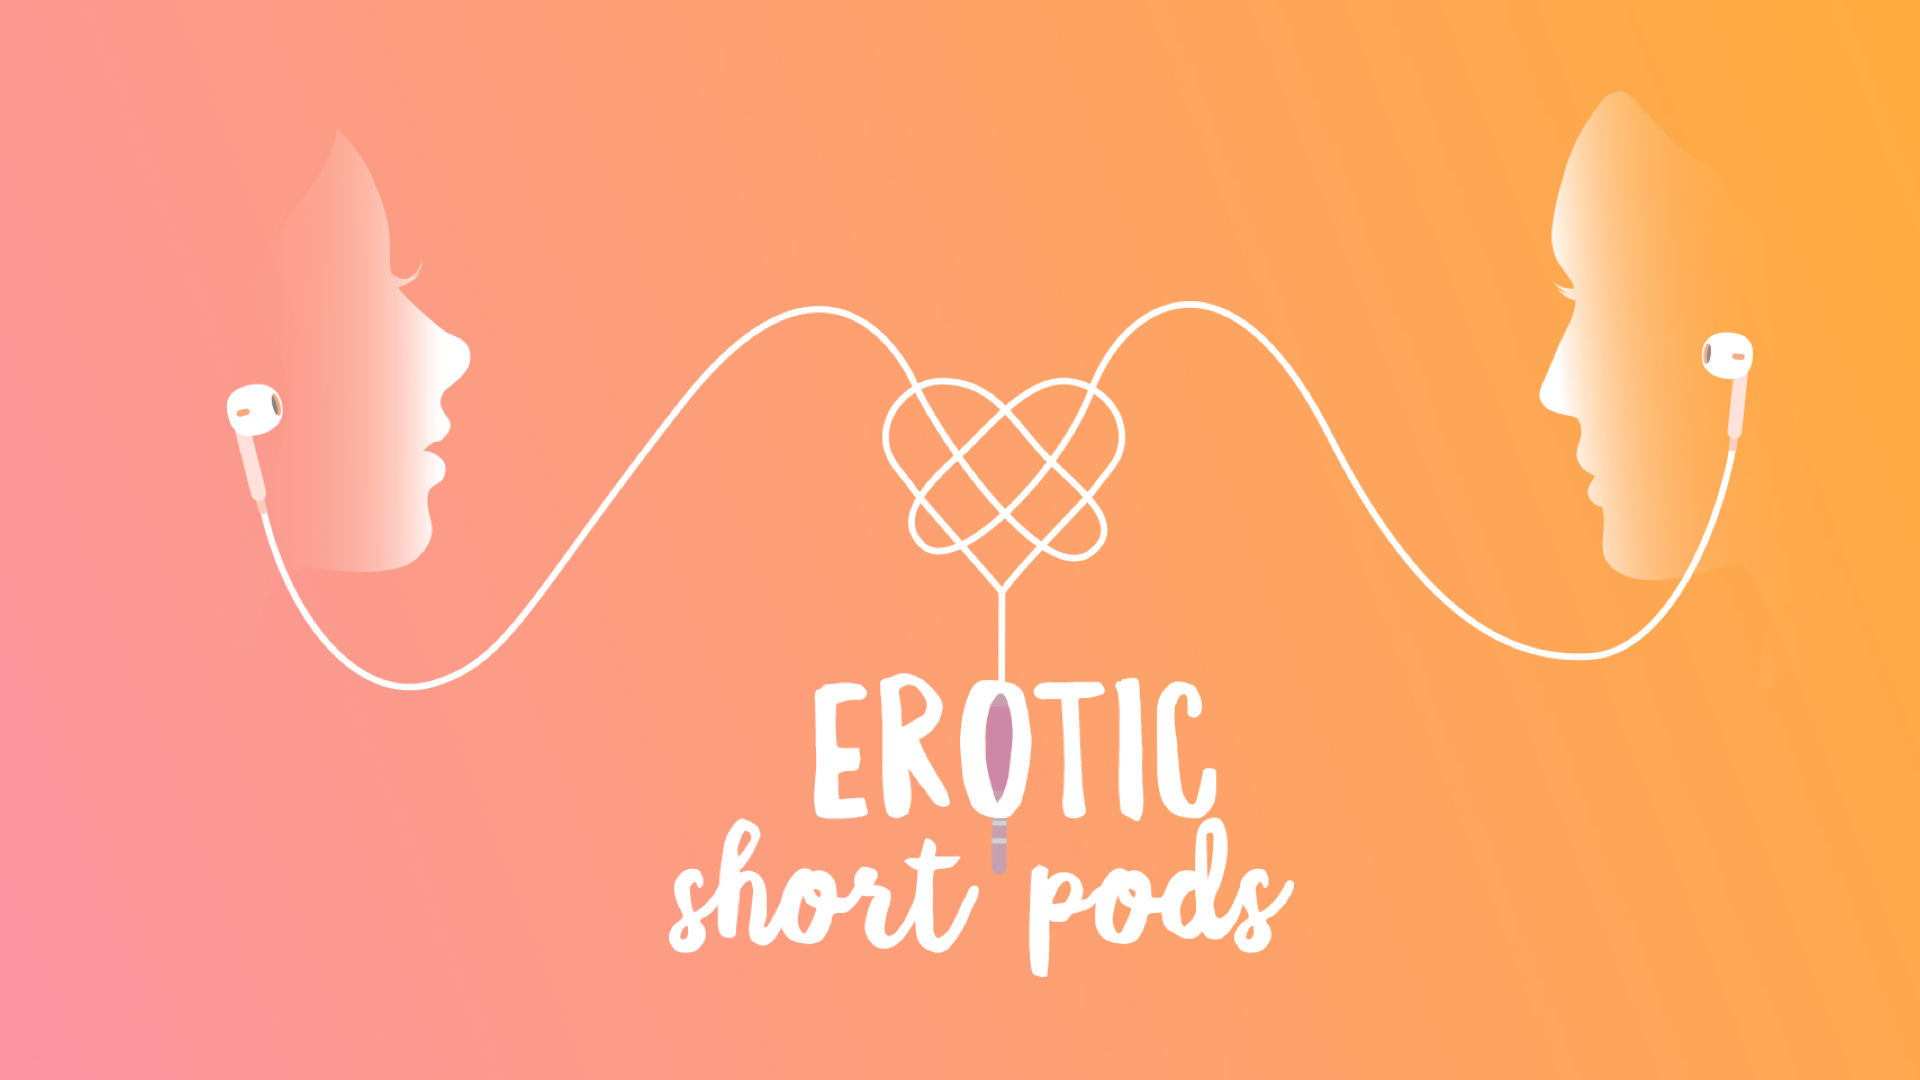 Erotic Short Pods